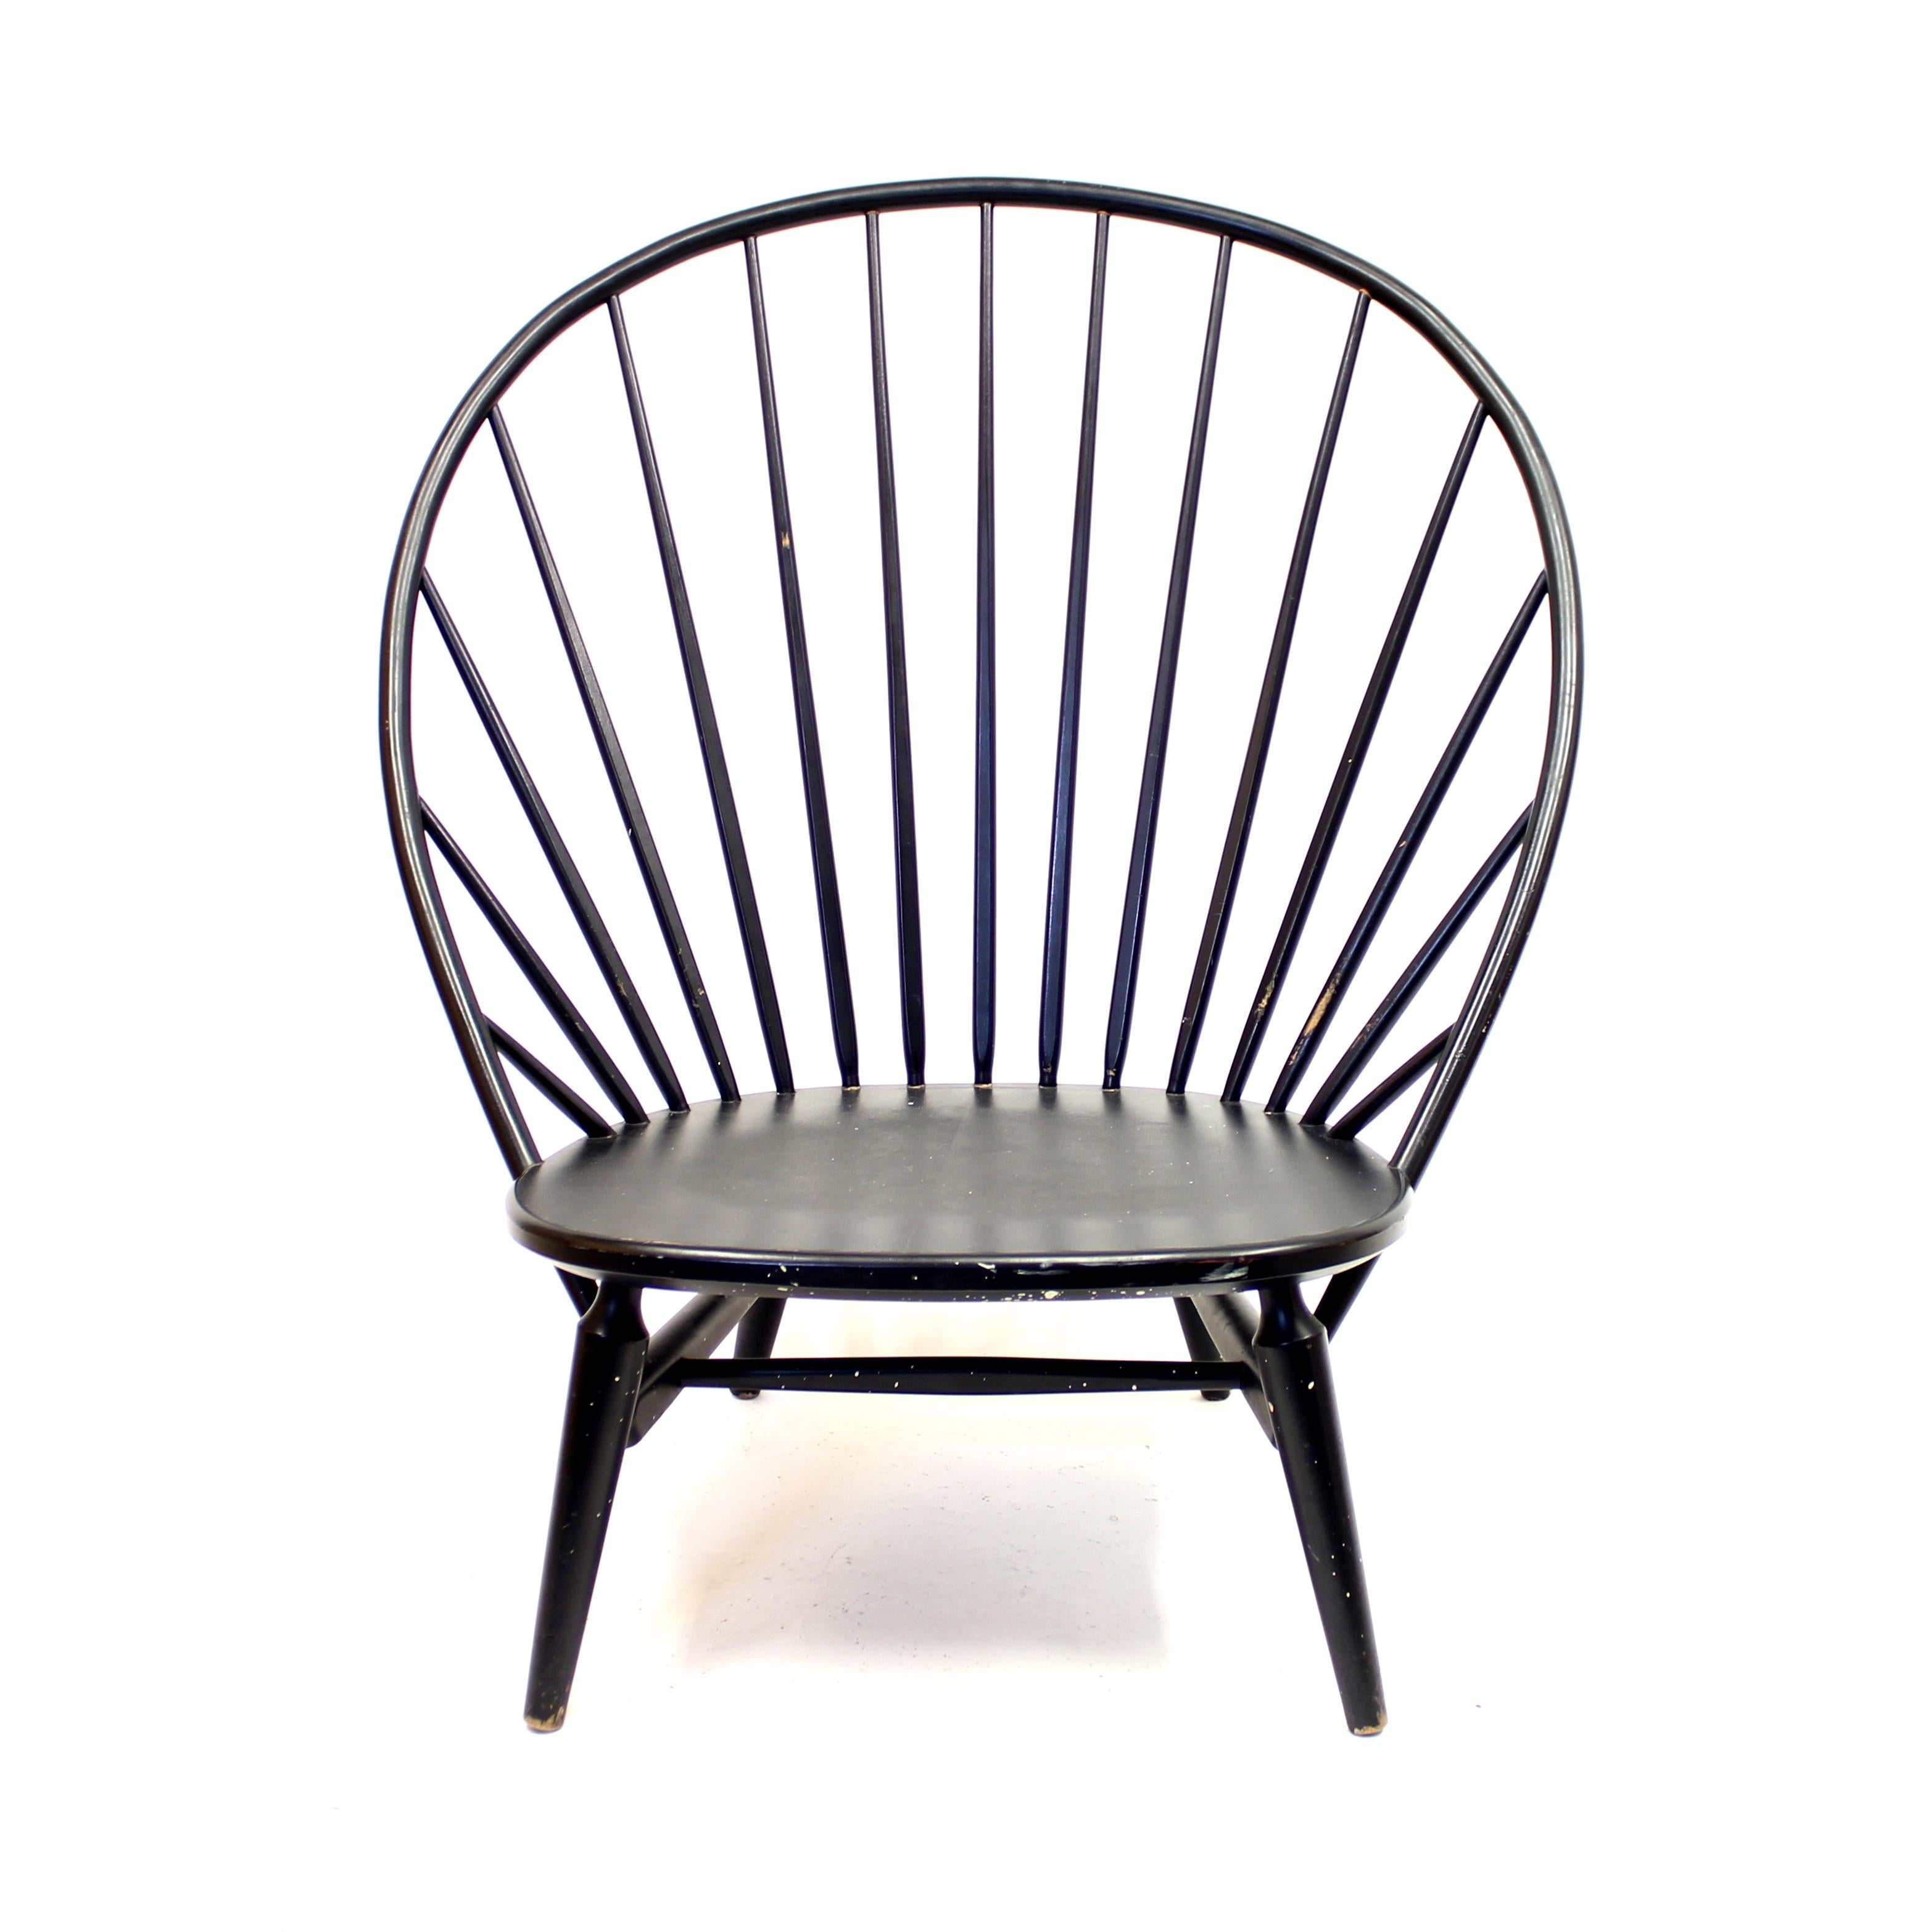 Chaise longue Bågen (L'Arc en anglais) en bois laqué noir d'origine. Conçu par Sven Engström et Gunnar Myrstrand en 1953 pour Nässjö Stolfabrik. Un véritable classique du design suédois. C'est assez rare de nos jours. Elle a la forme d'une chaise